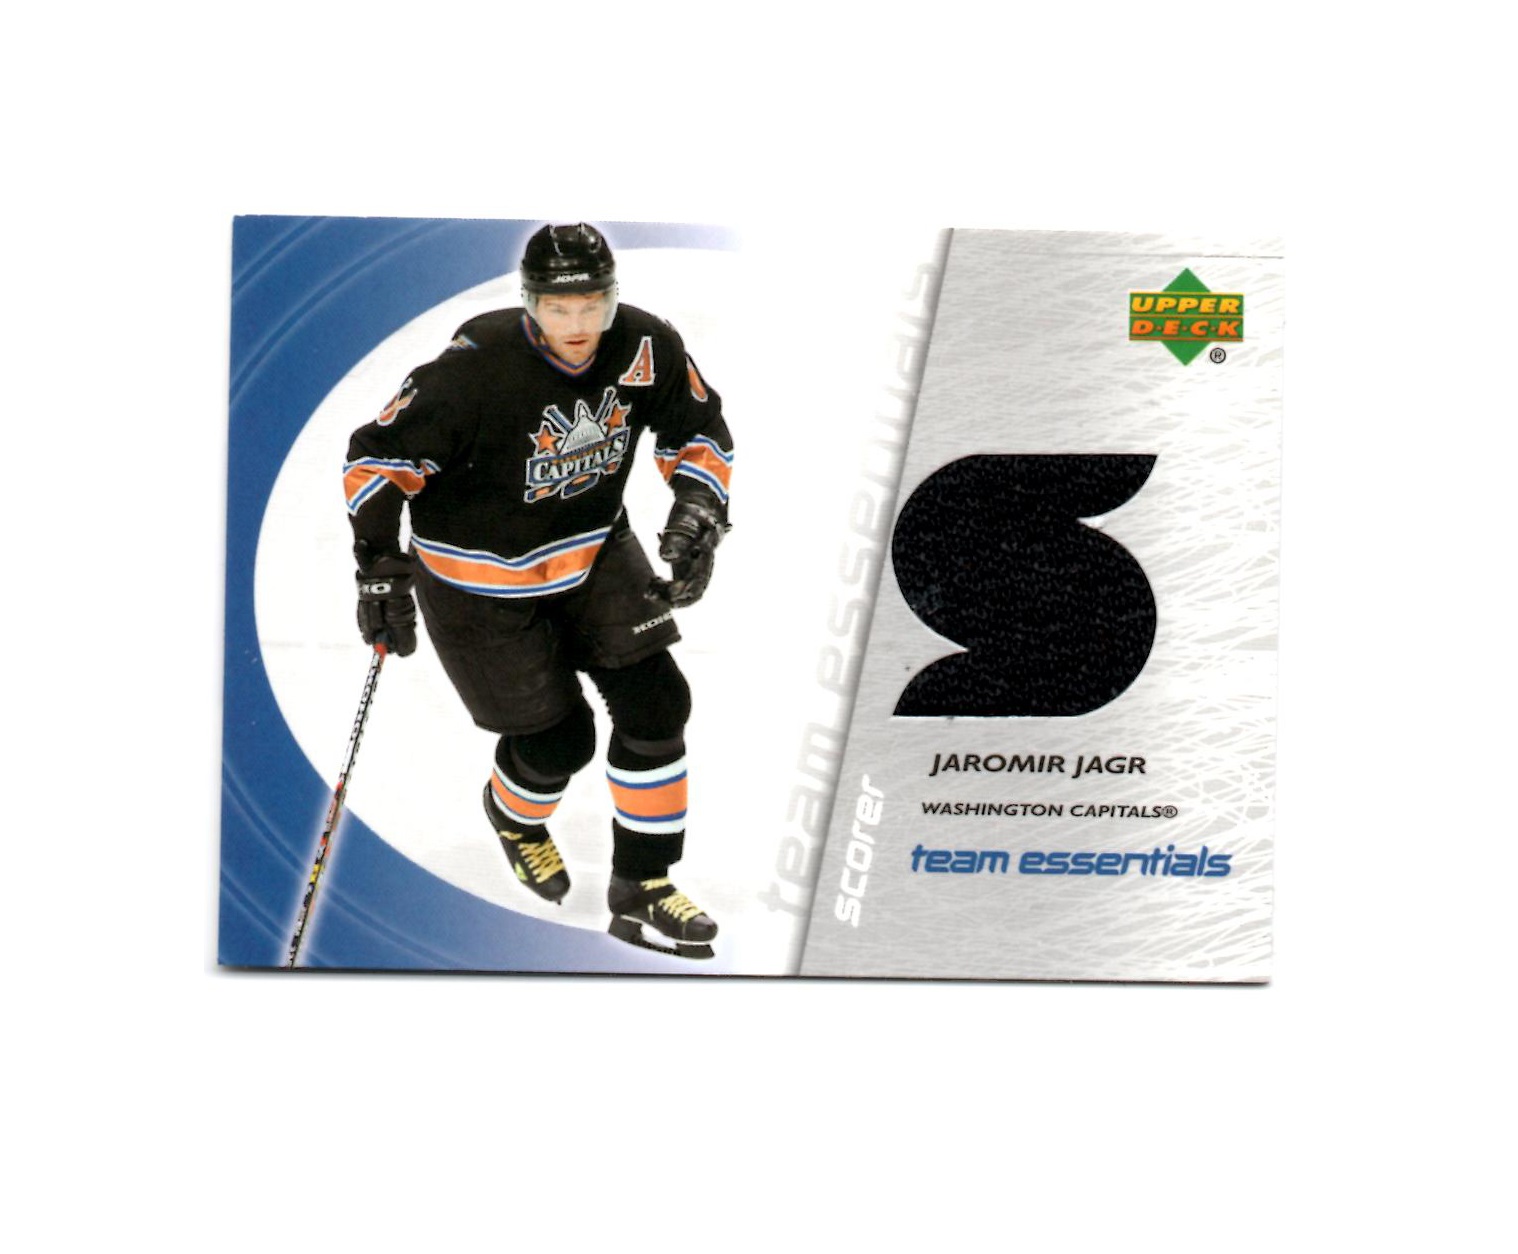 2003-04 Upper Deck Team Essentials #TSJJ Jaromir Jagr (150-X126-CAPITALS)